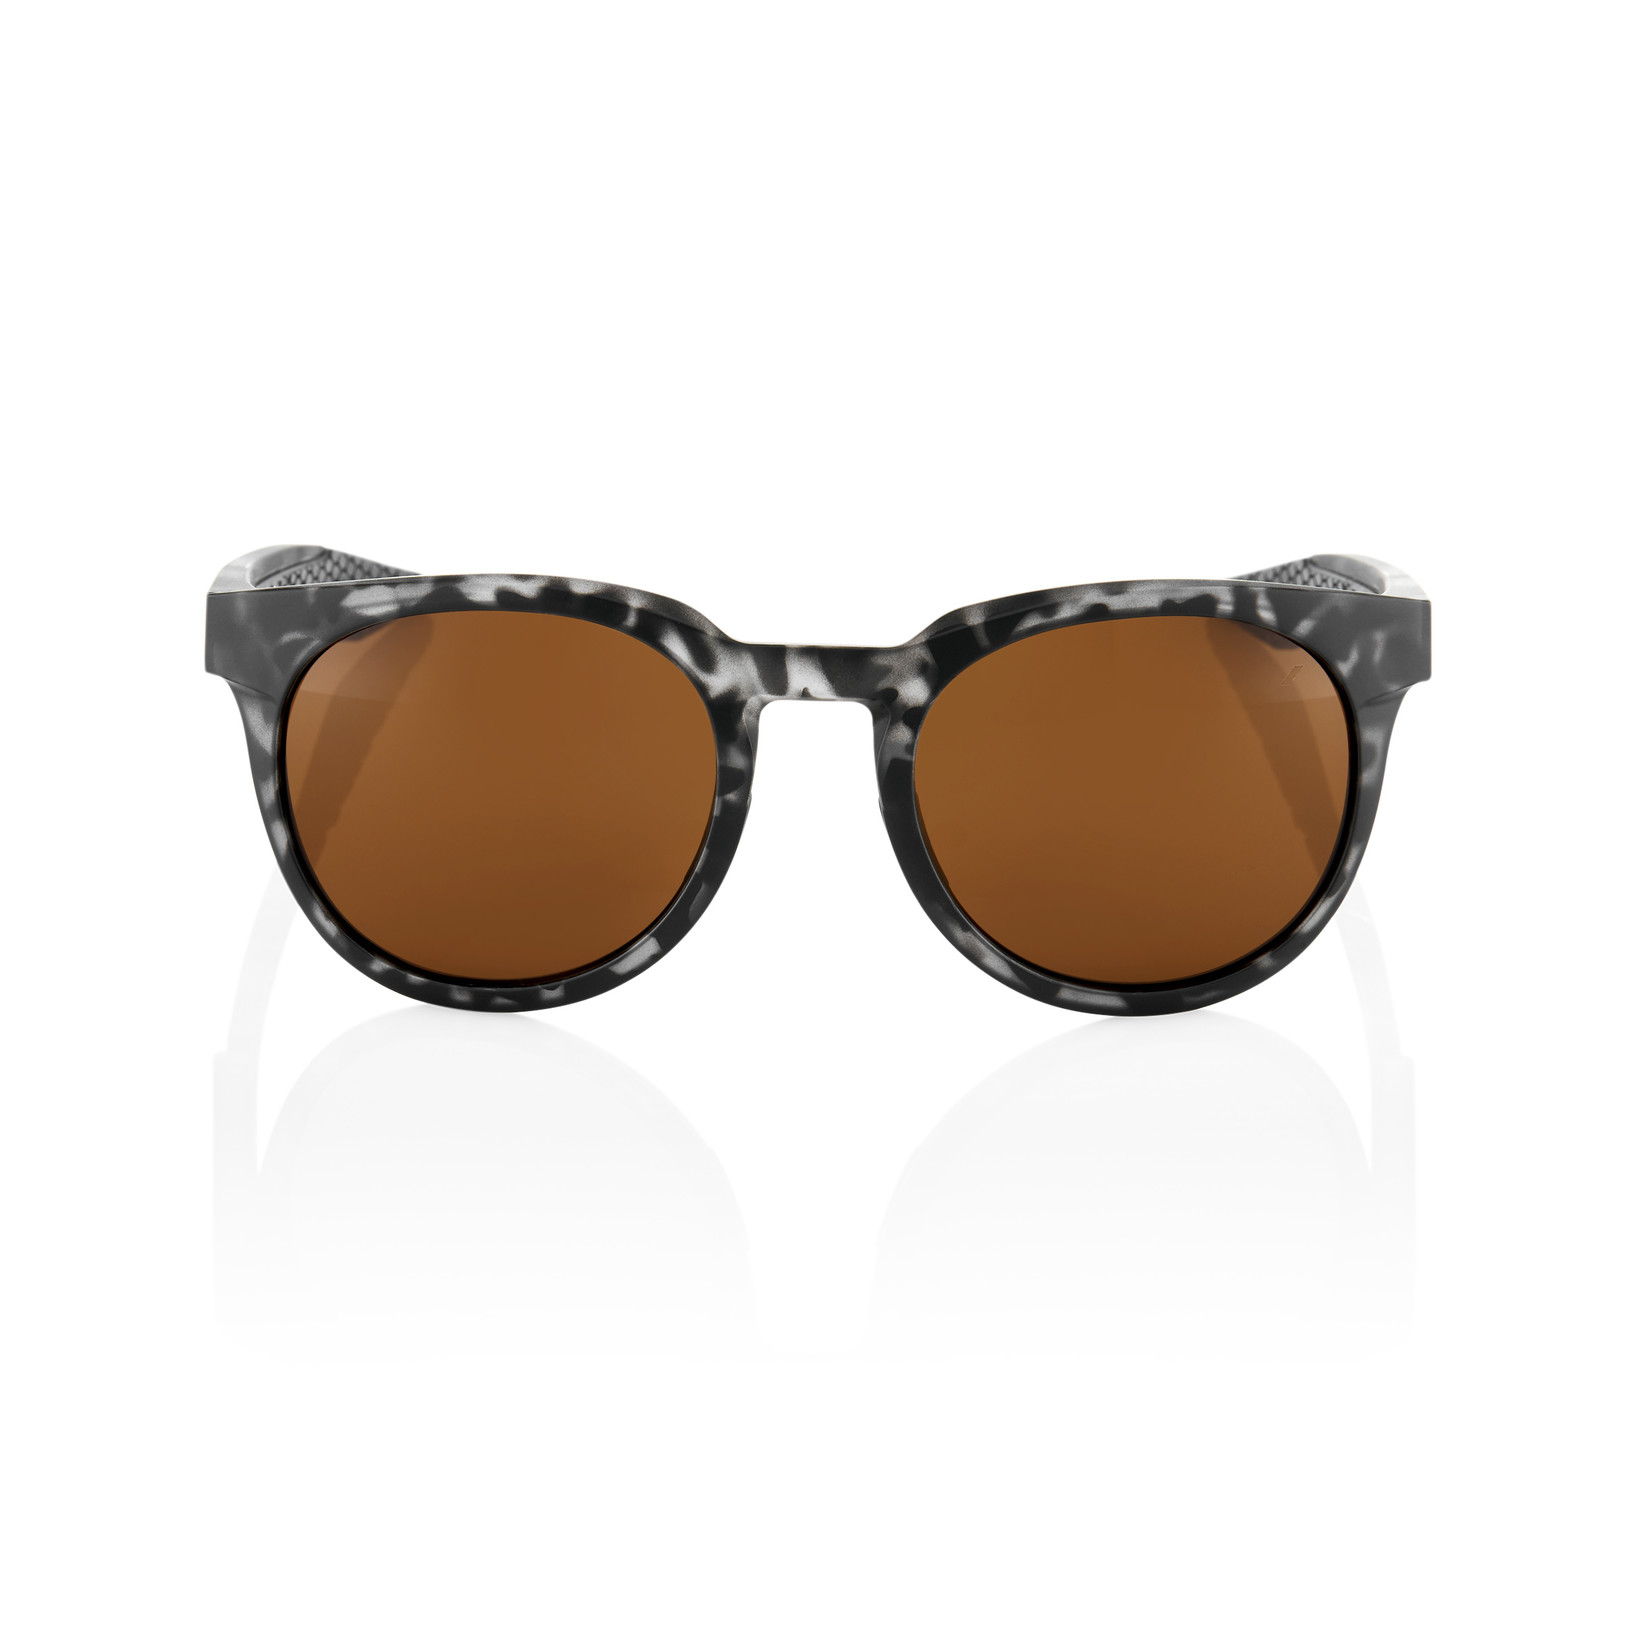 1 100% Campo Bike Sunglasses Matte Black Havana - Bronze